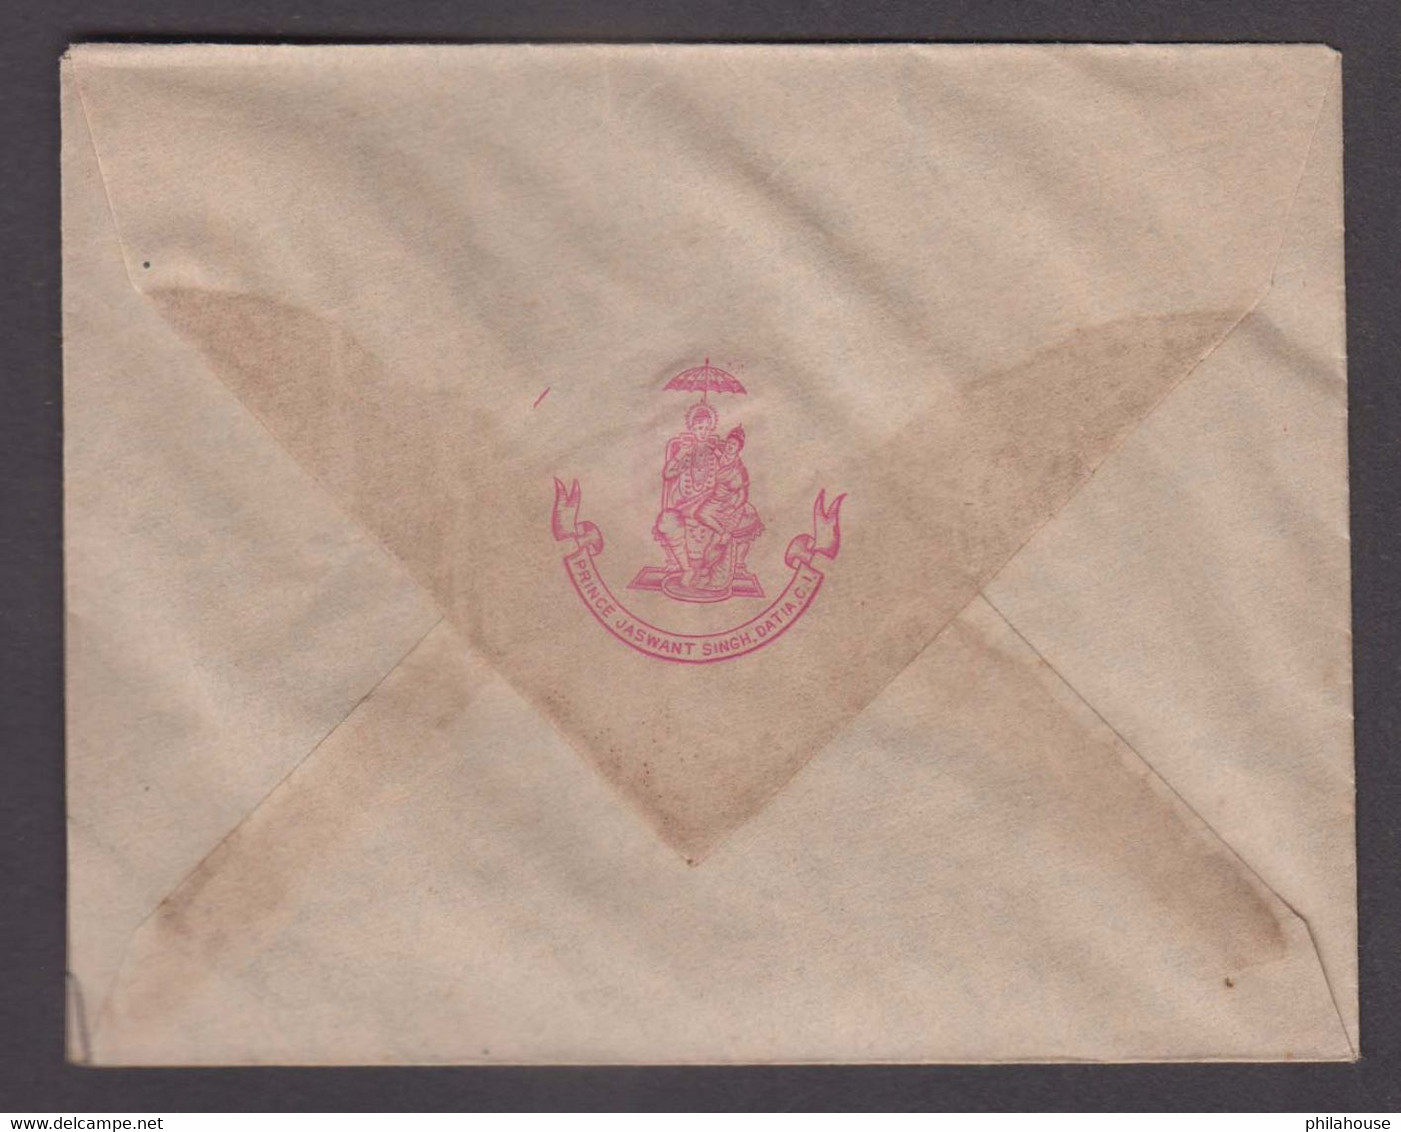 India Datia State Crest Monogram Envelope Of Prince Jaswant Singh Datia State C.I. Unused #P2 - Datia